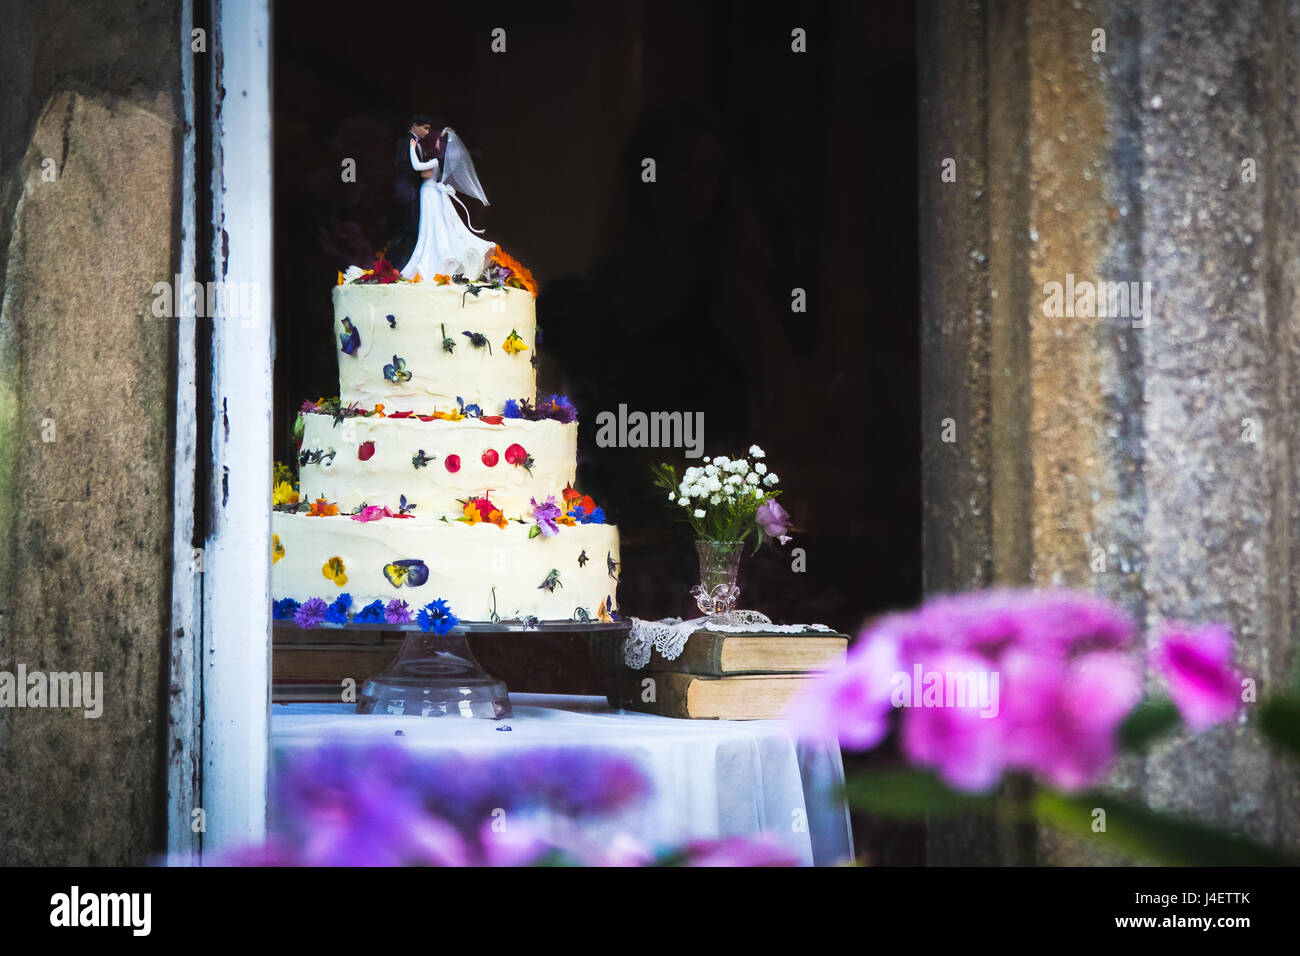 Bella torta nuziale con glassa bianca e fiori e rabboccato con figurine dello sposo e della sposa. Rosa e fiori viola in primo piano, offuscata indietro Foto Stock